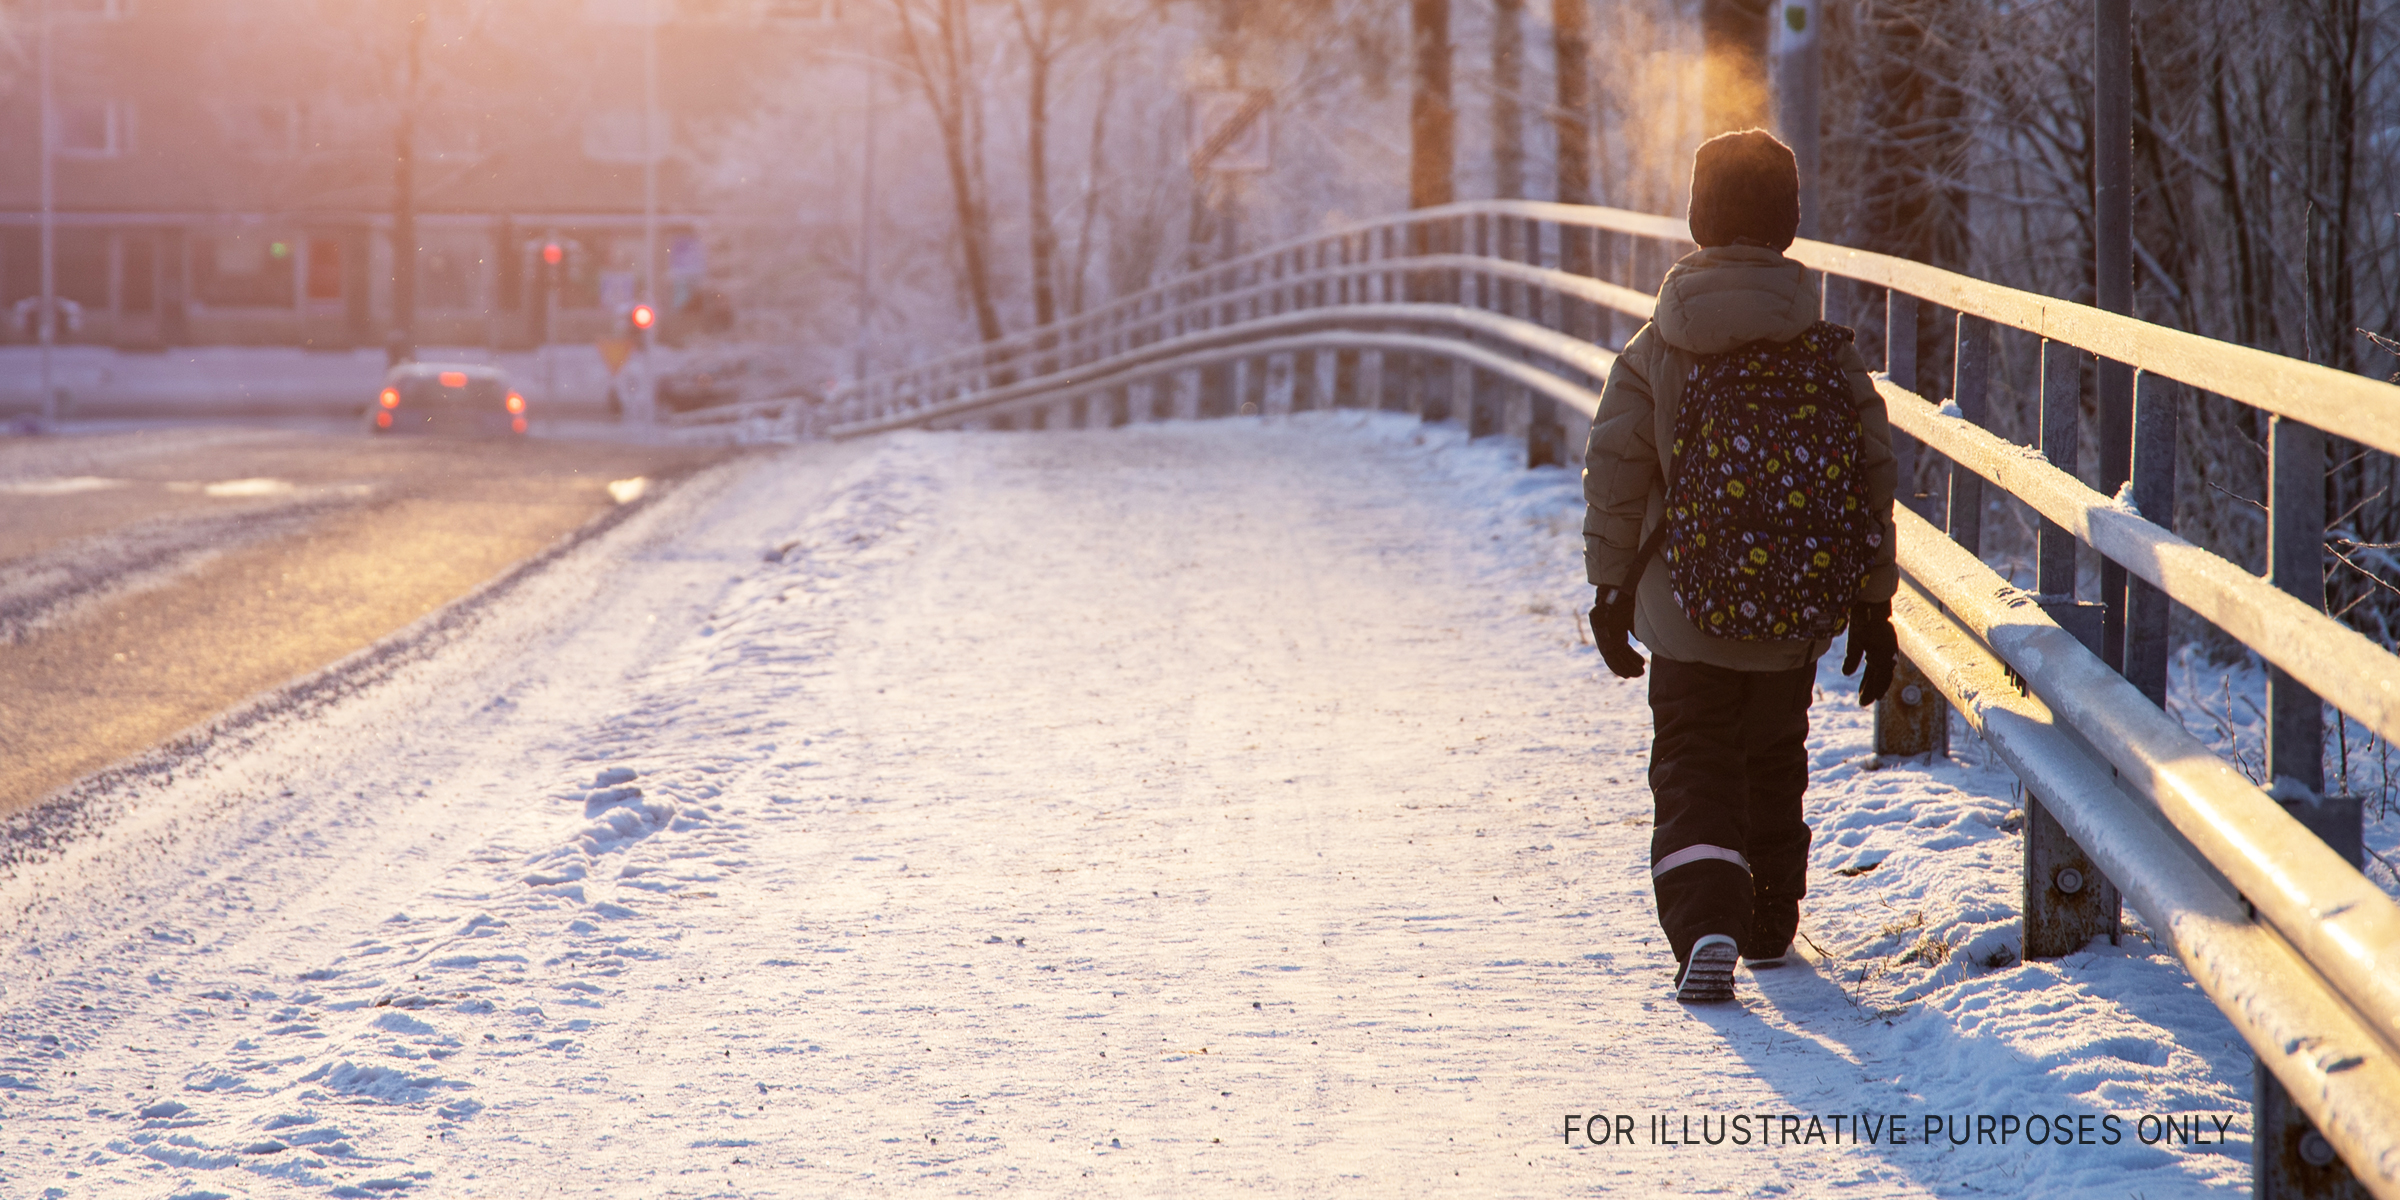 Young boy walks alone on a snowy roadside | Source: Shutterstock